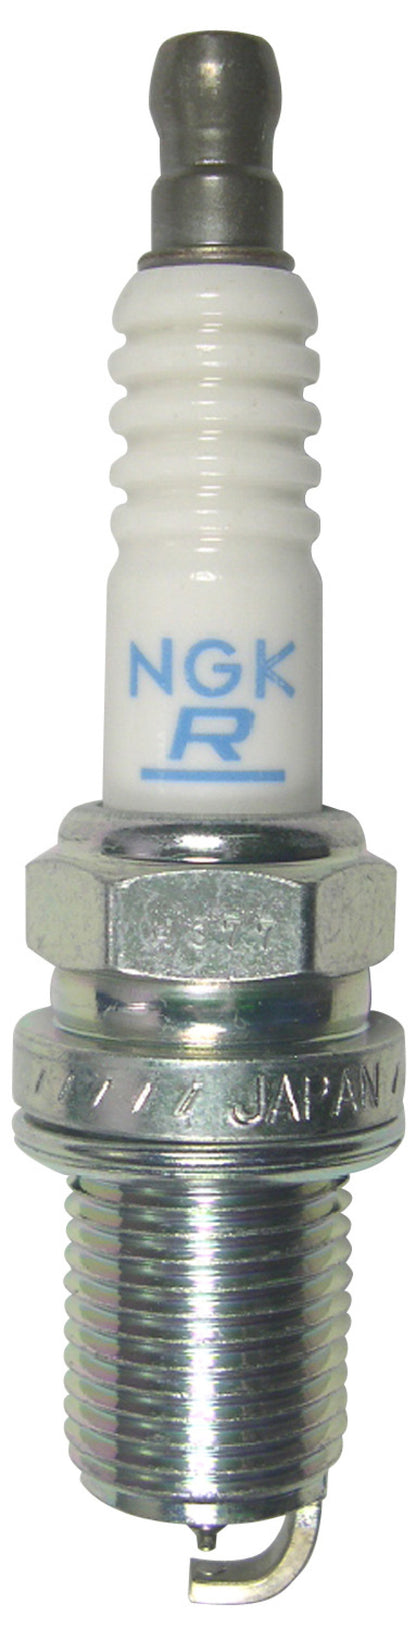 NGK Laser Iridium Spark Plug Box of 4 (IFR6V-10G)